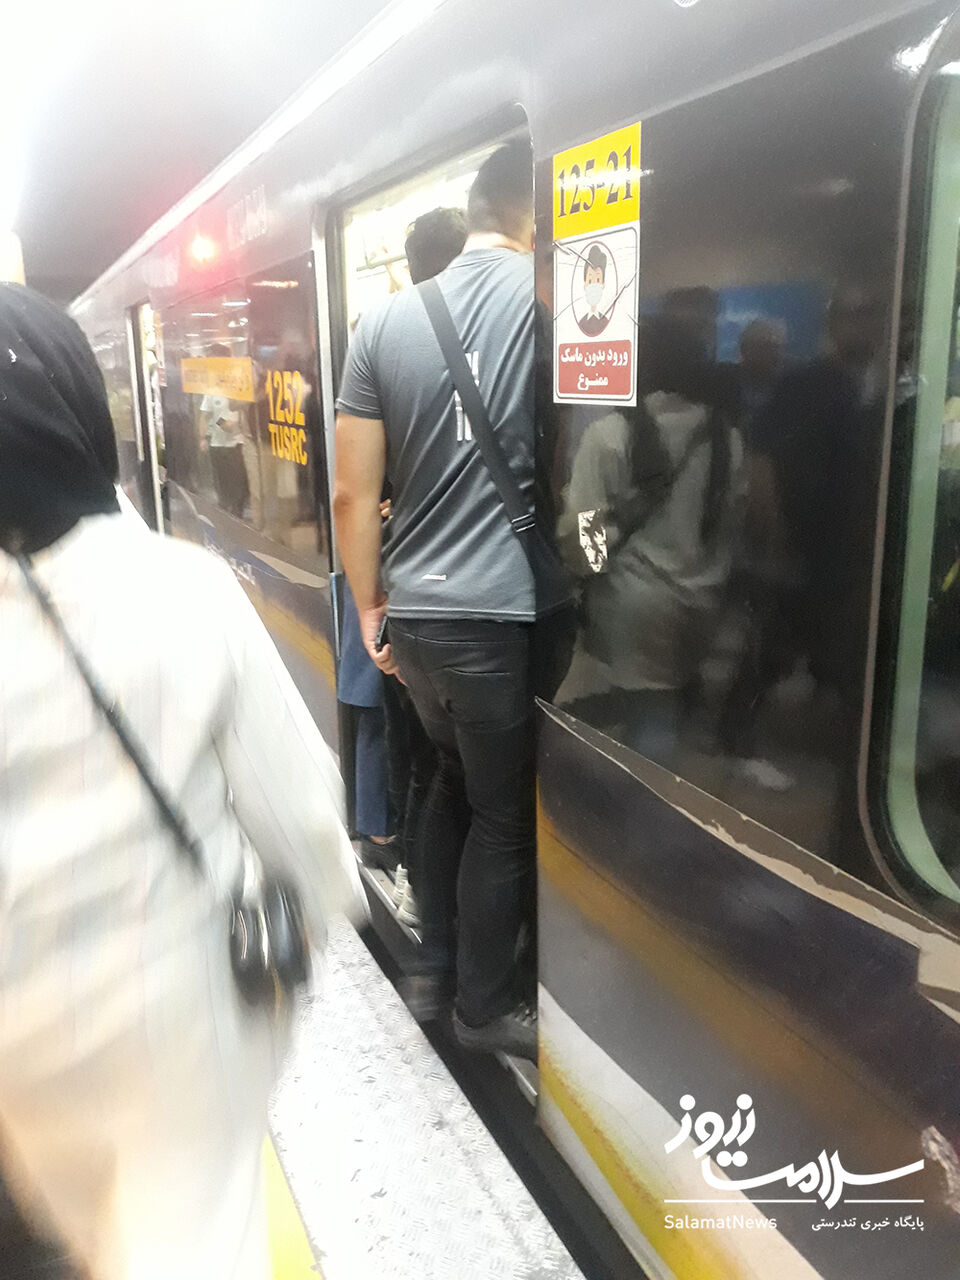  دعوا، فحاشی و ضرب و شتم هر روزه به دلیل حضور آقایان در واگن بانوان مترو